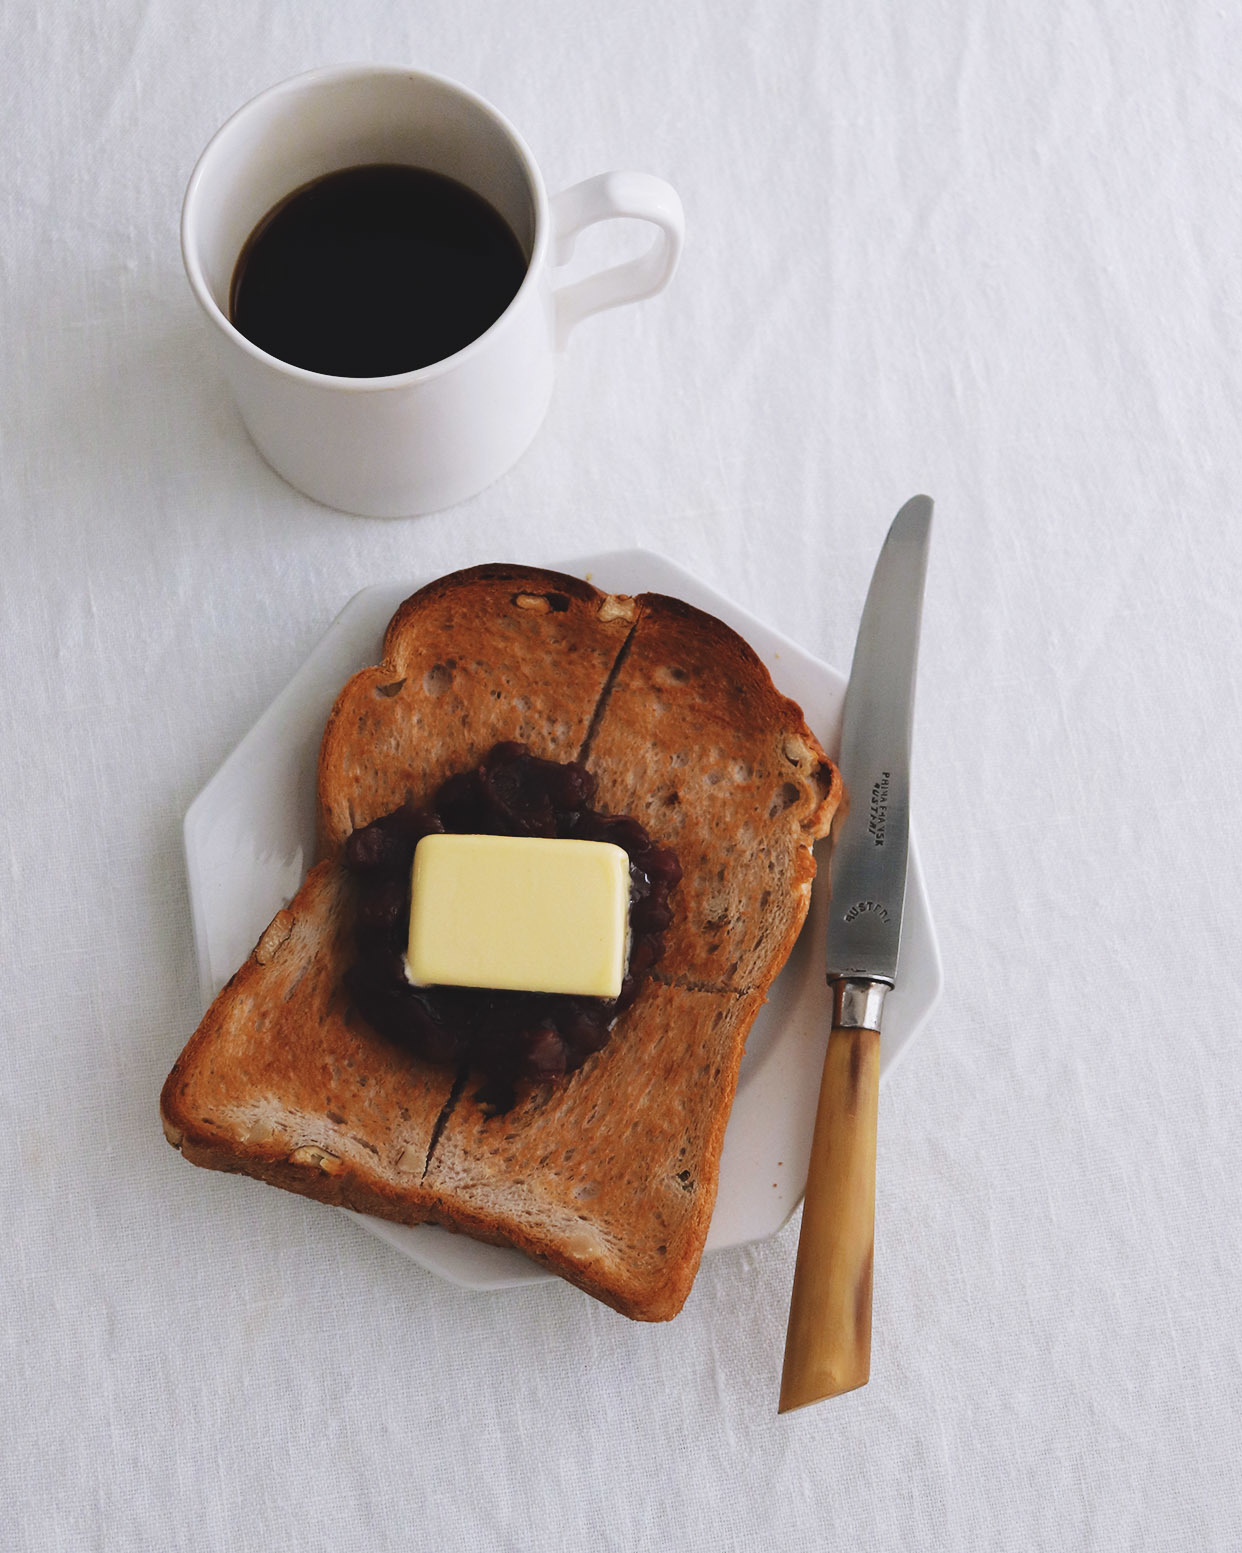 Anko butter toast